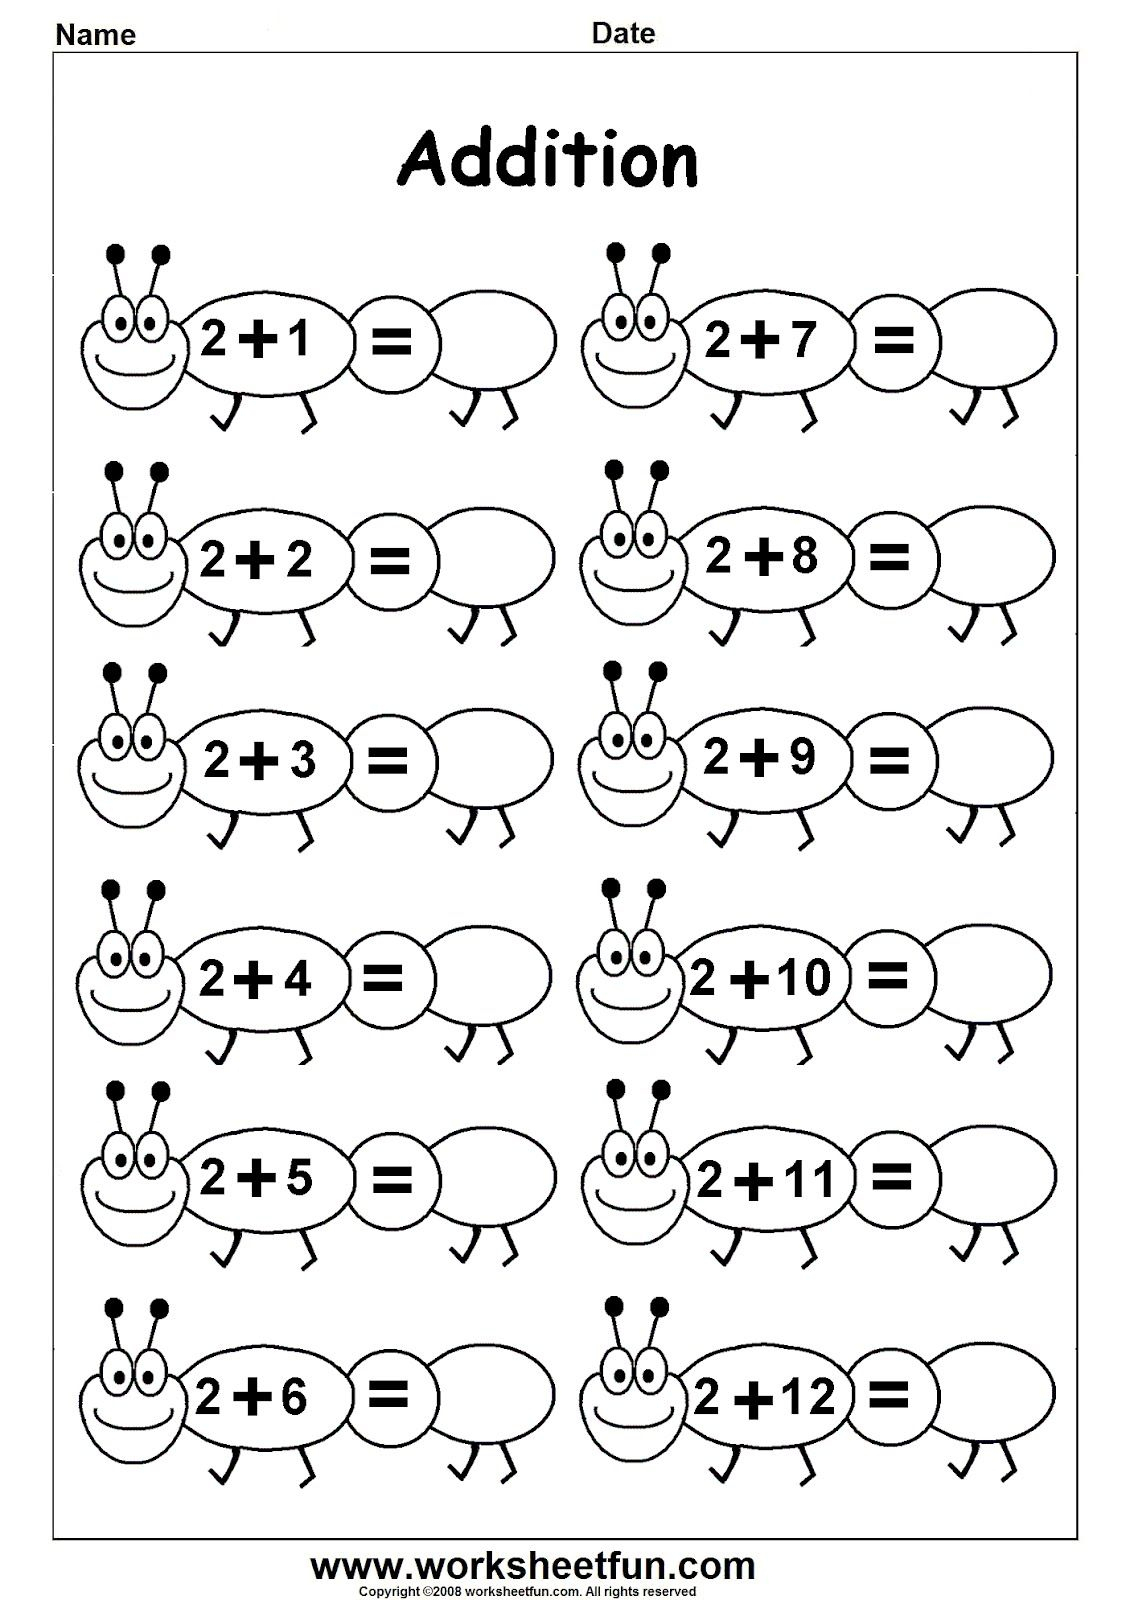 Worksheetfun - Free Printable Worksheets | Ethan School | Free Printable Worksheets For Kindergarten